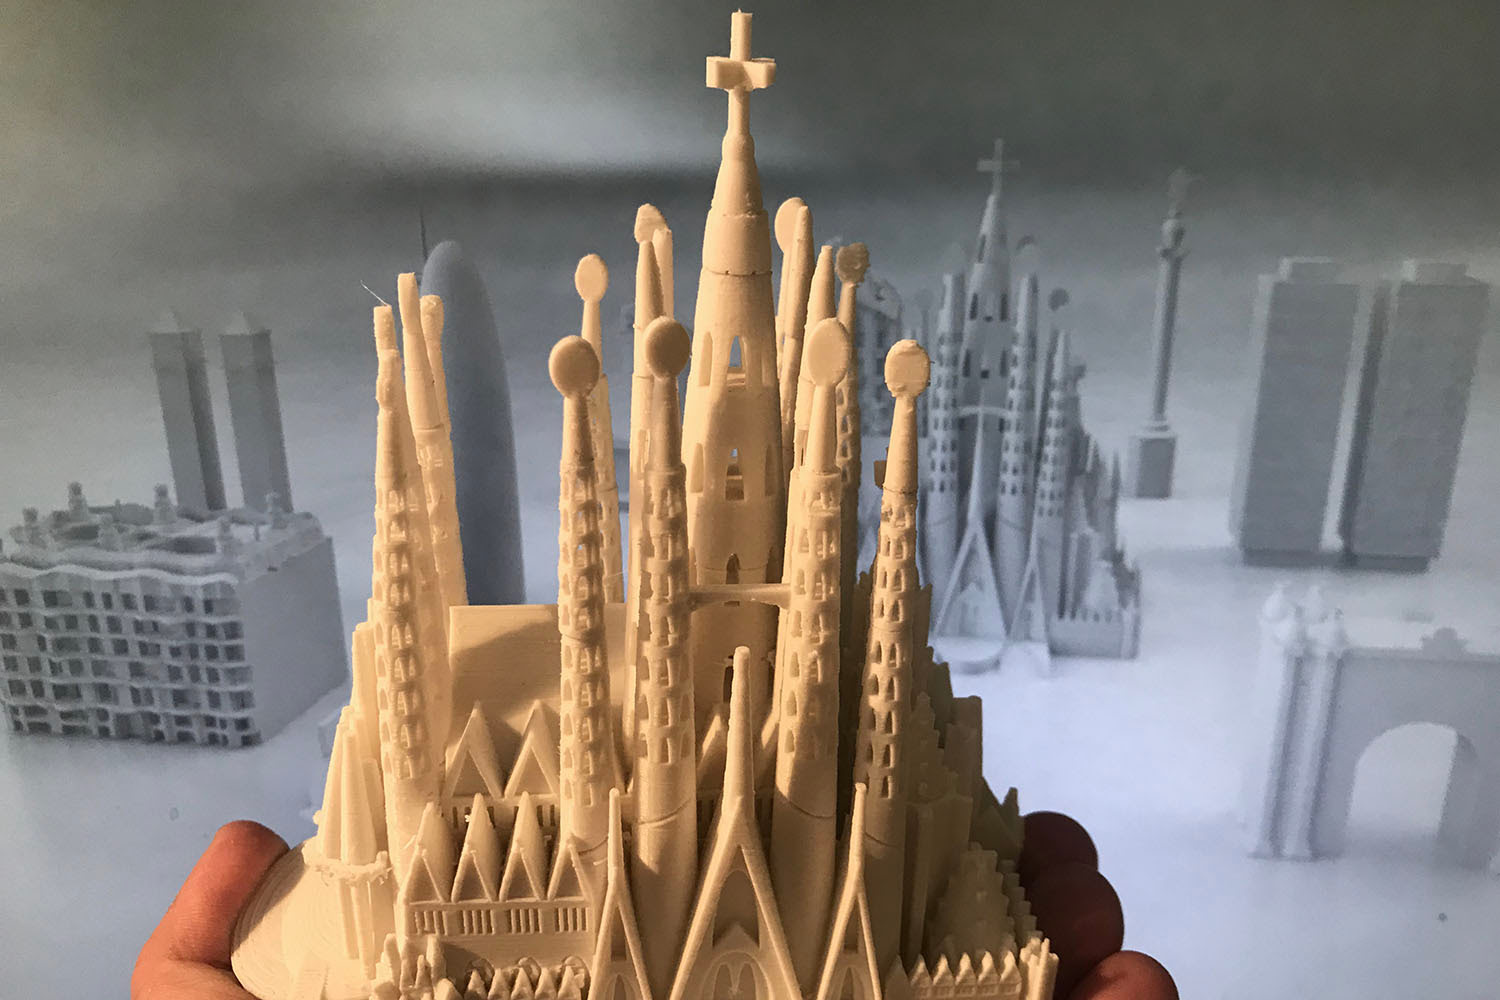 Servicios de Impresión 3D en Barcelona